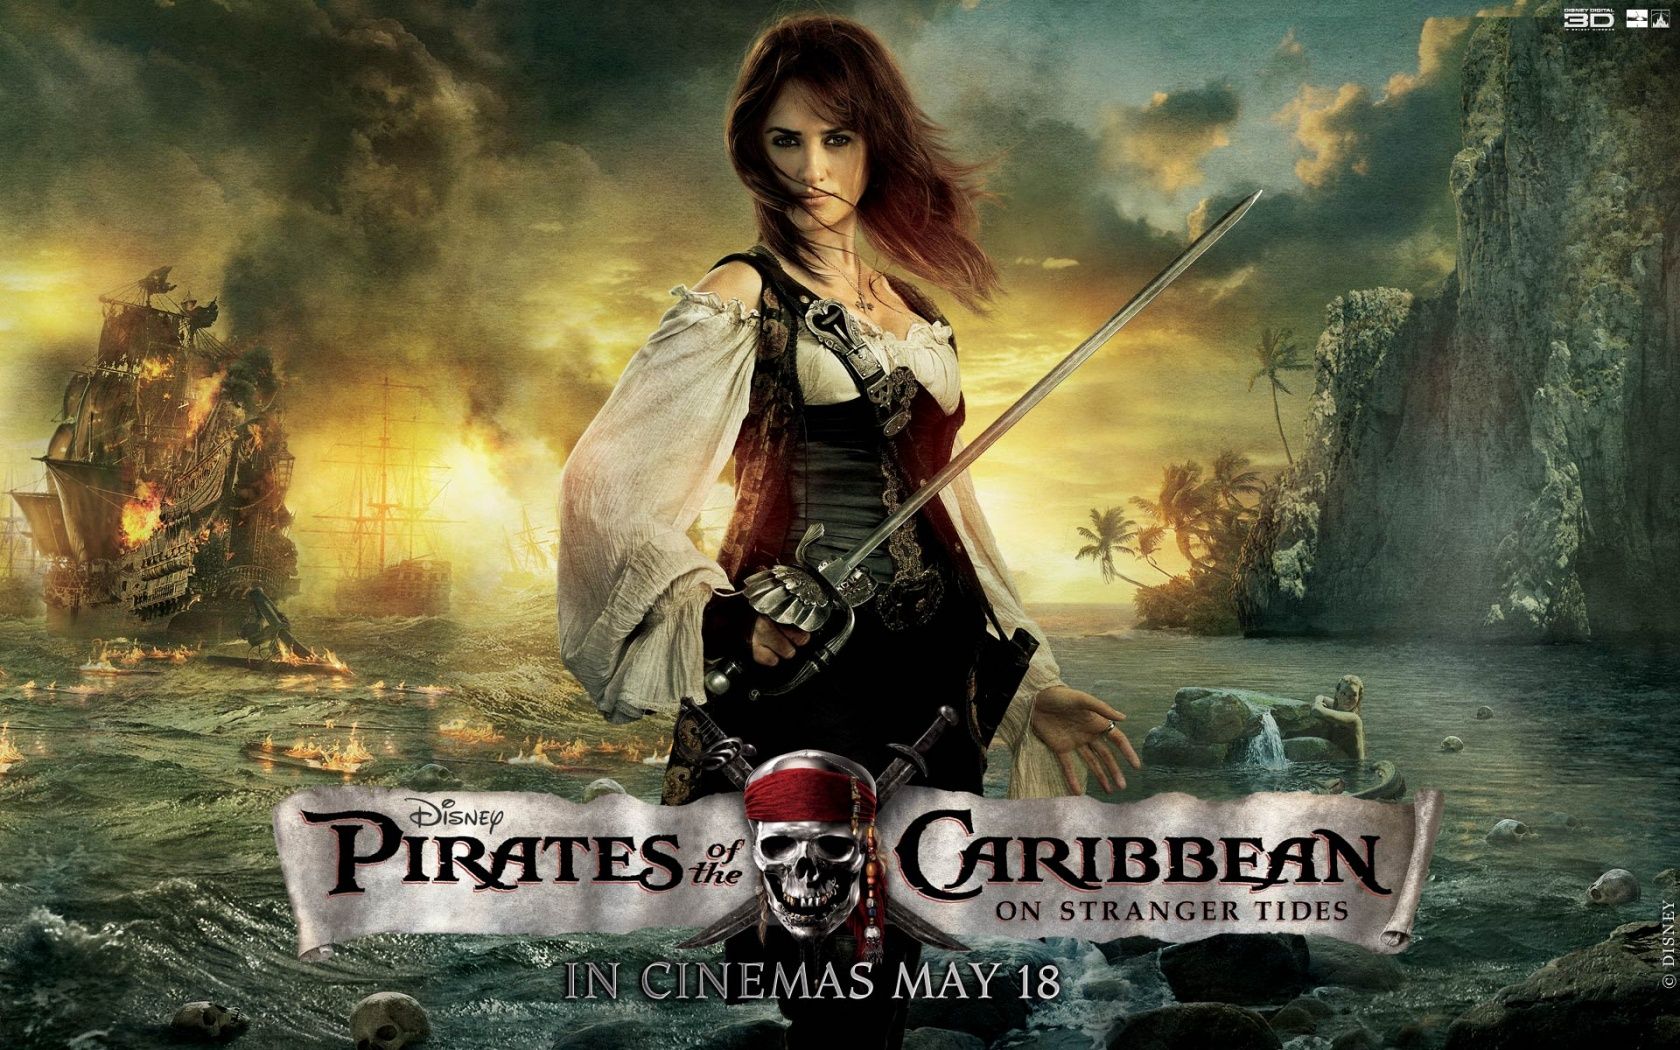 Penélope Cruz Piratas del Caribe Fondos en formato jpg para